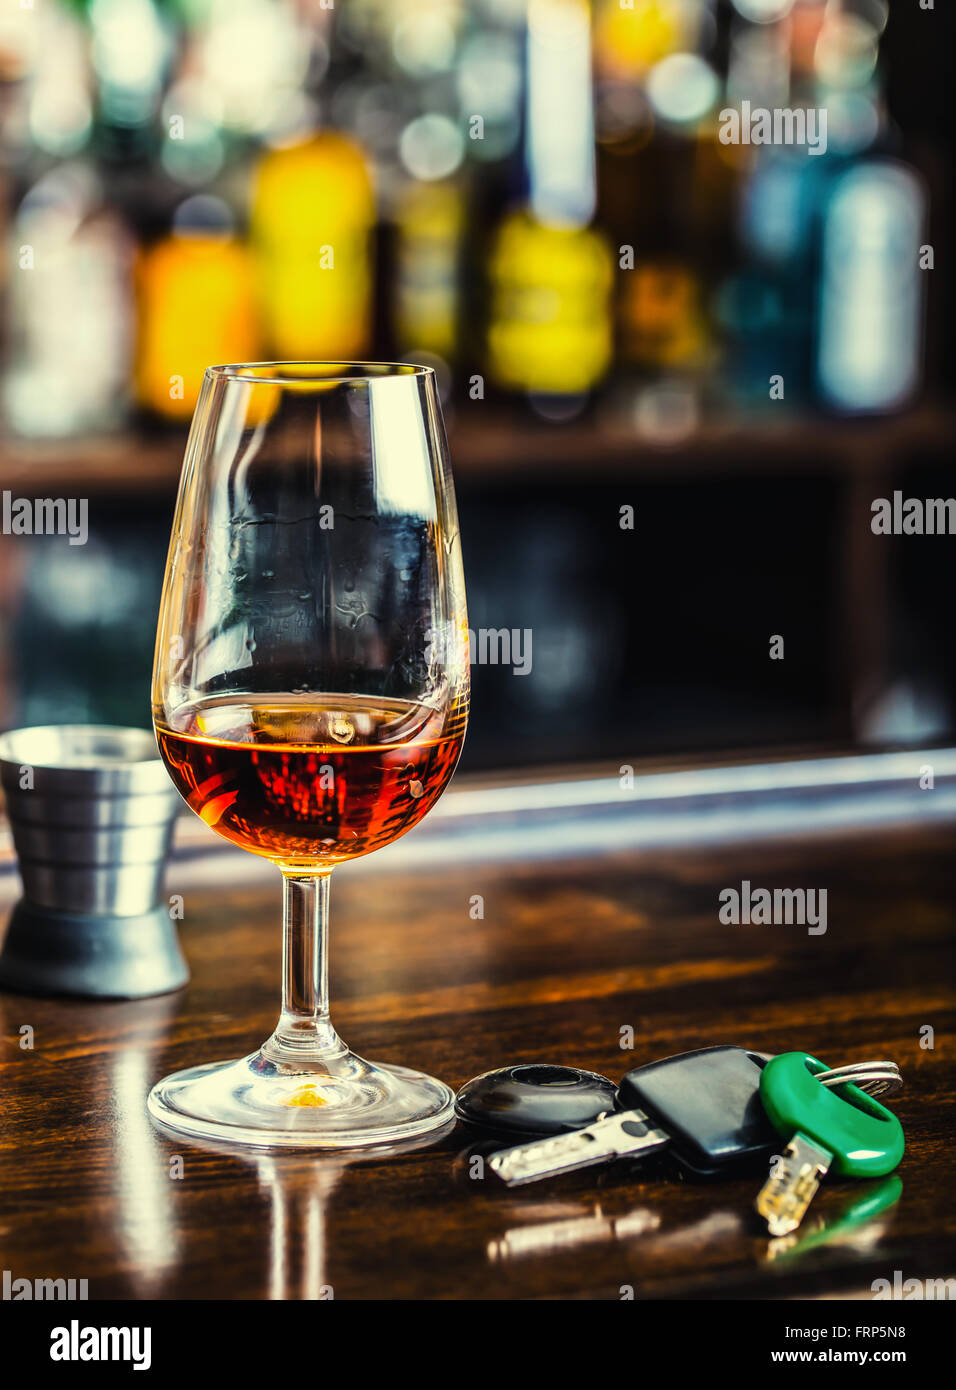 El alcoholismo. Taza de coñac o brandy mano las llaves del coche y conductor irresponsable. Foto de stock